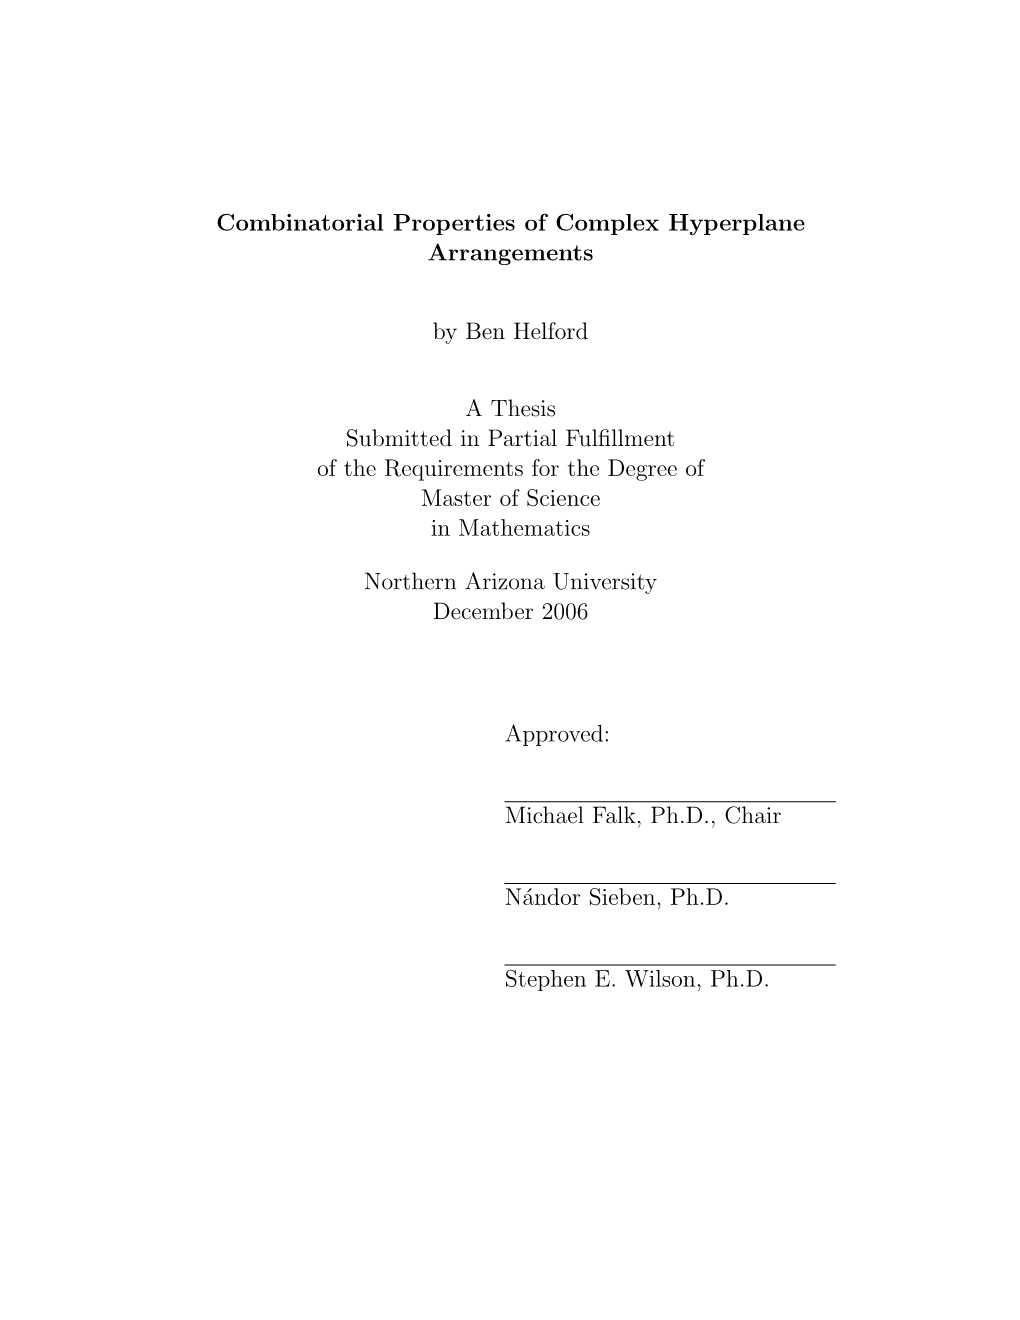 Combinatorial Properties of Complex Hyperplane Arrangements